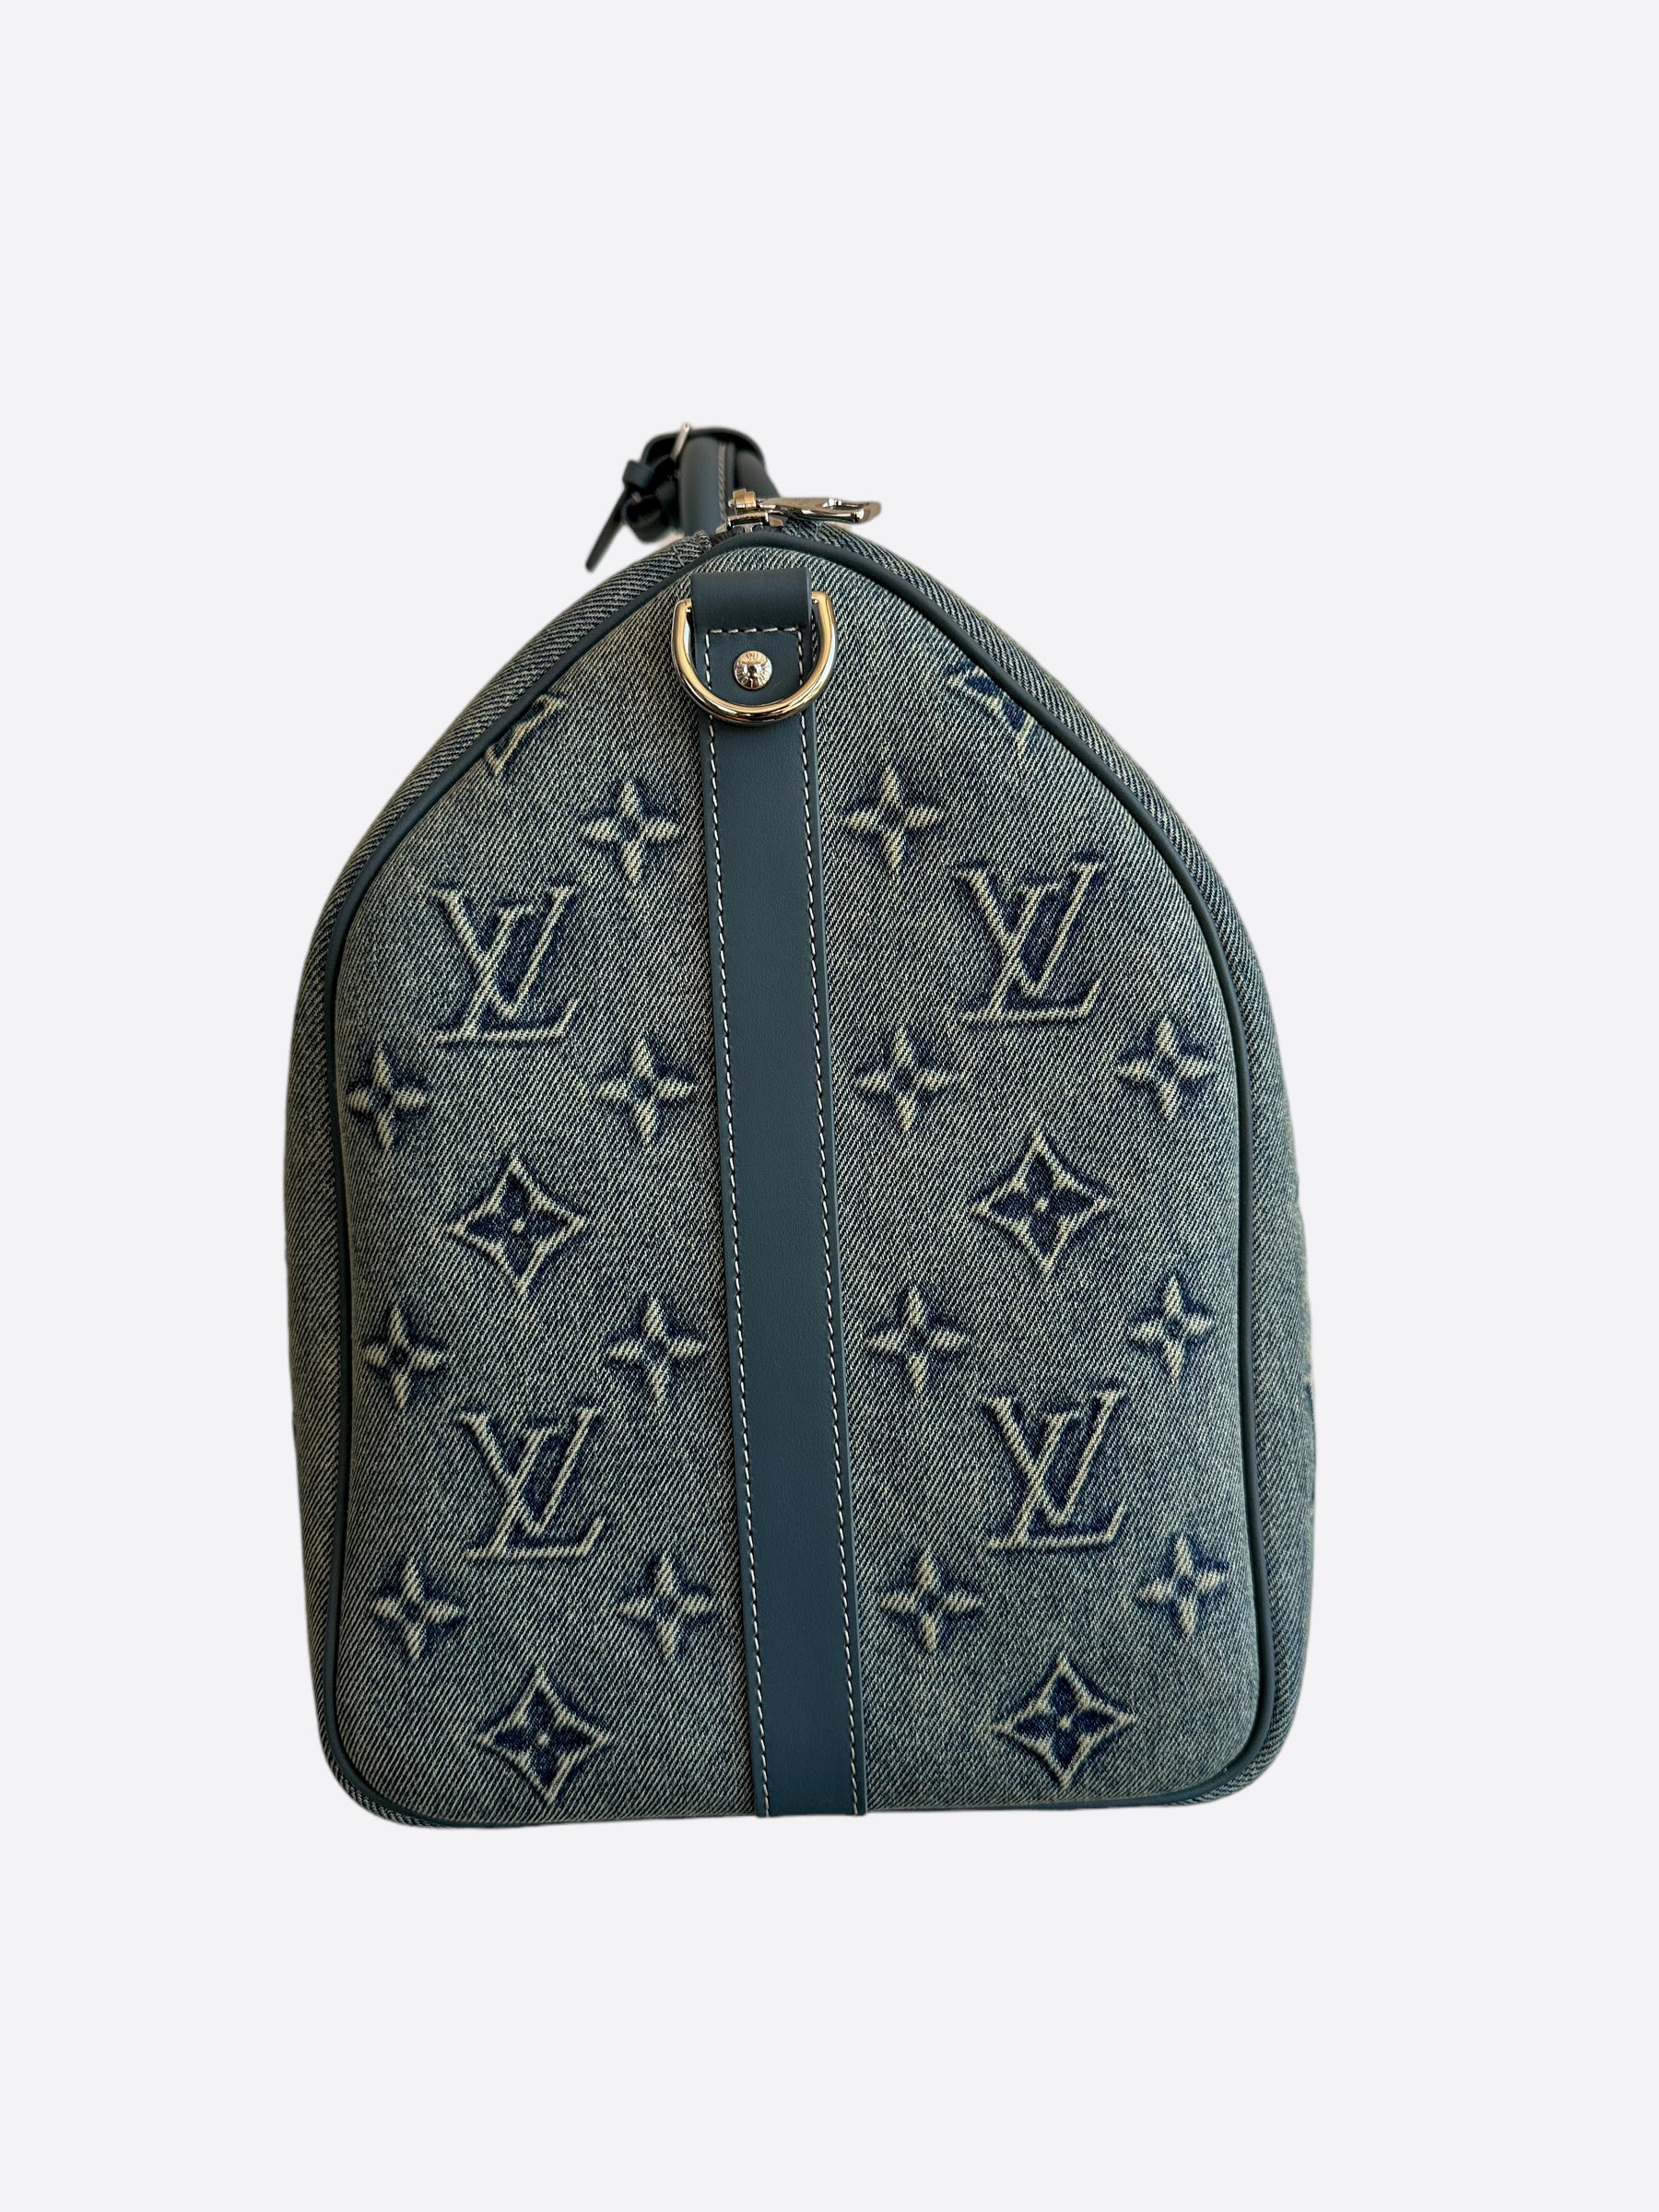 Louis Vuitton Keepall Bandoulière 50 Washed Denim Blue autres Toiles Monogram